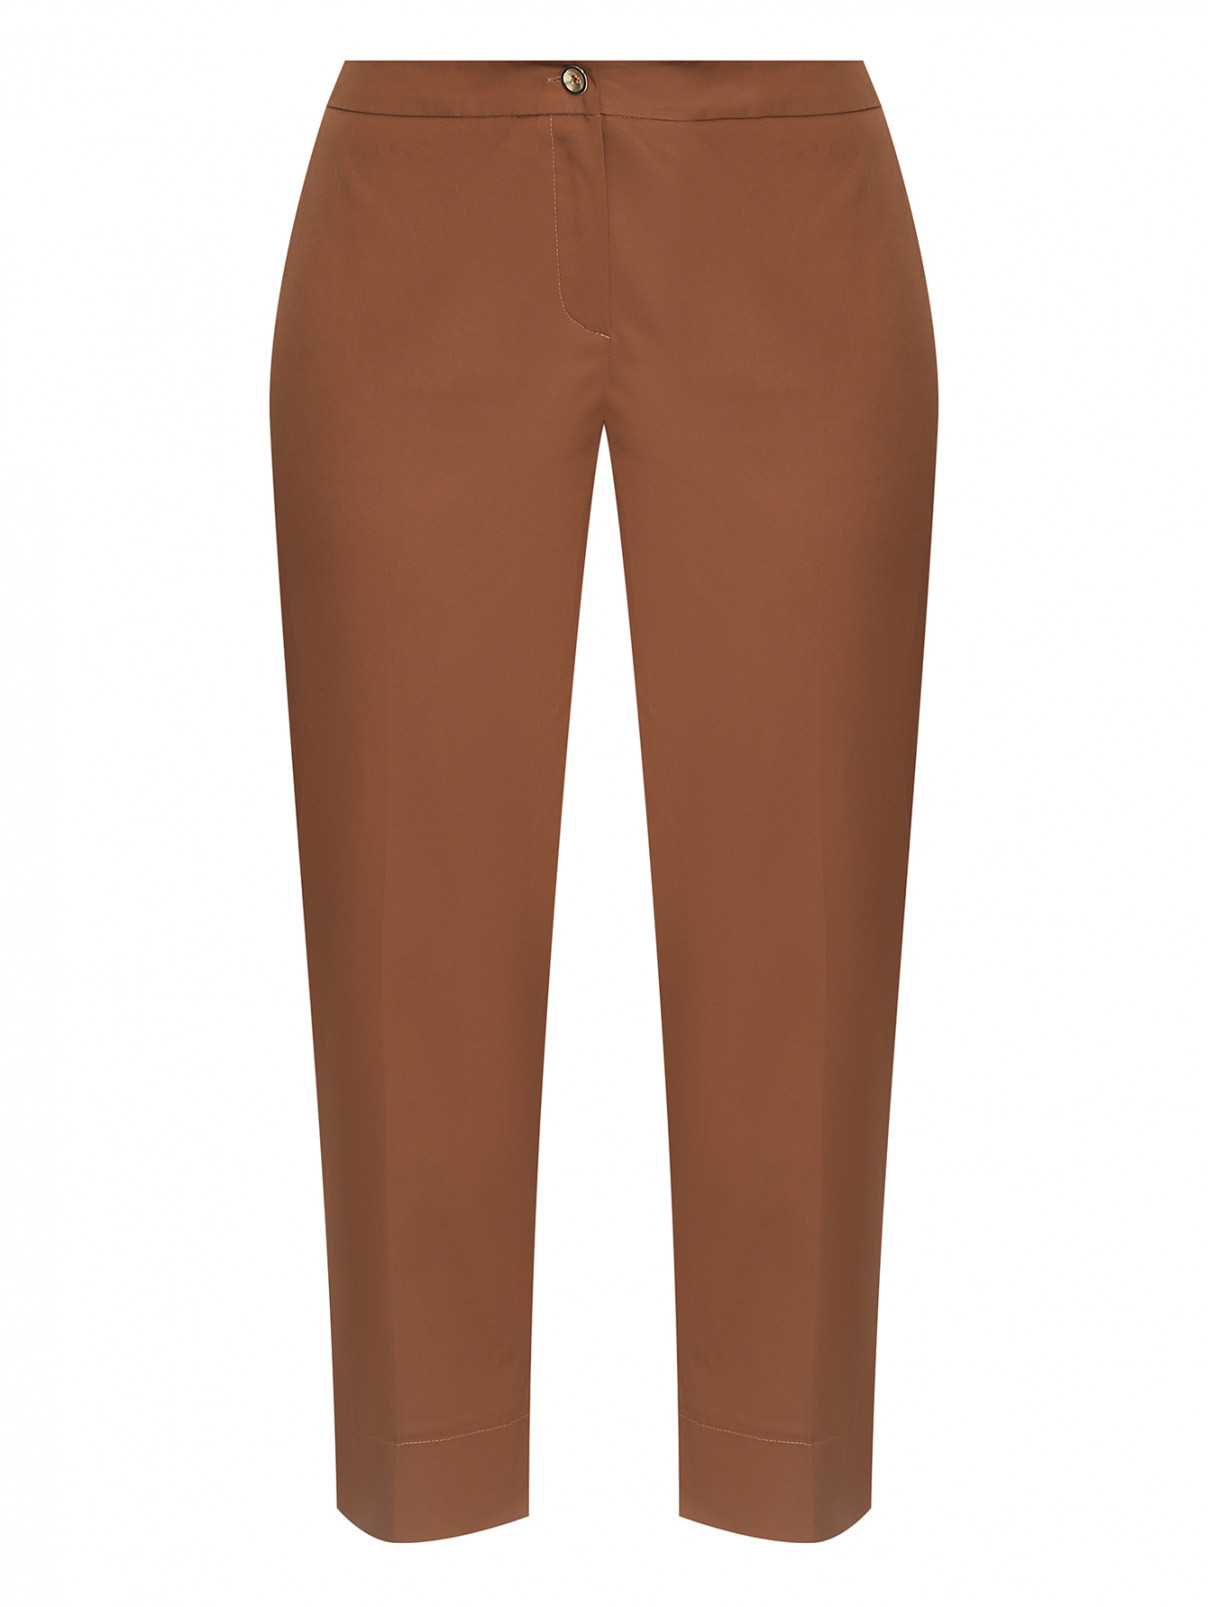 Укороченные брюки из хлопка Persona by Marina Rinaldi  –  Общий вид  – Цвет:  Коричневый